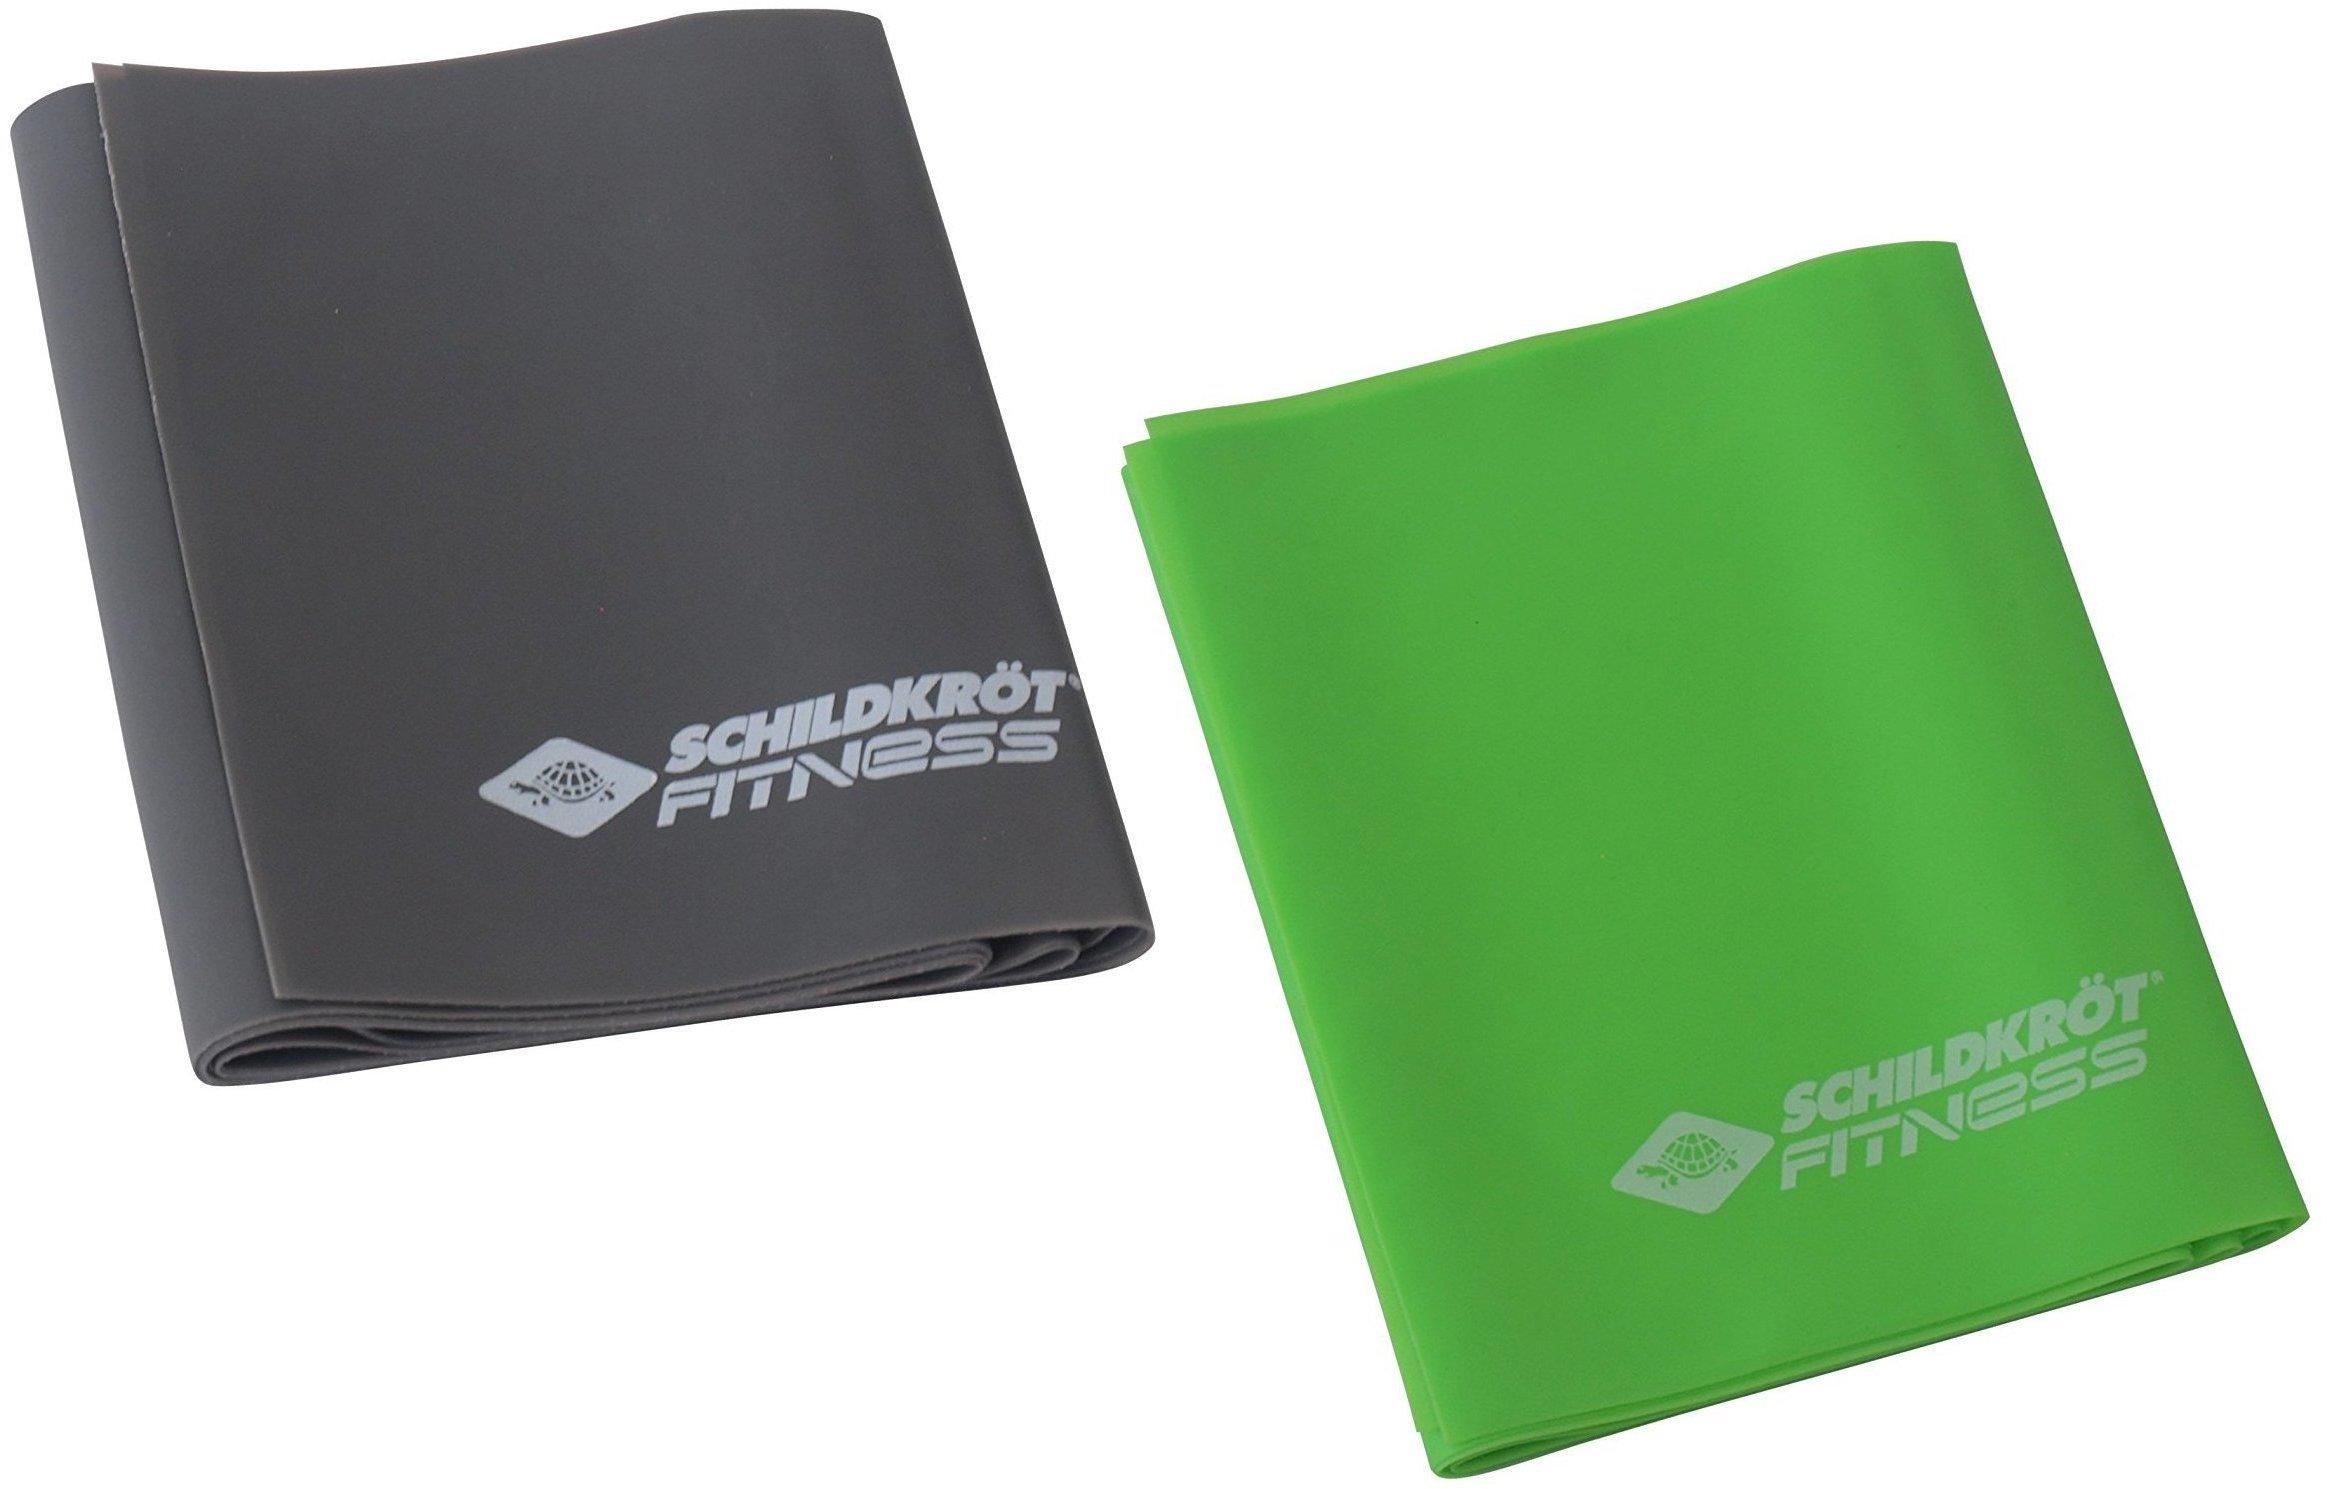 grün/grau Test - Latexfrei Set 2er Schildkröt ab € 7,99 Fitnessbänder